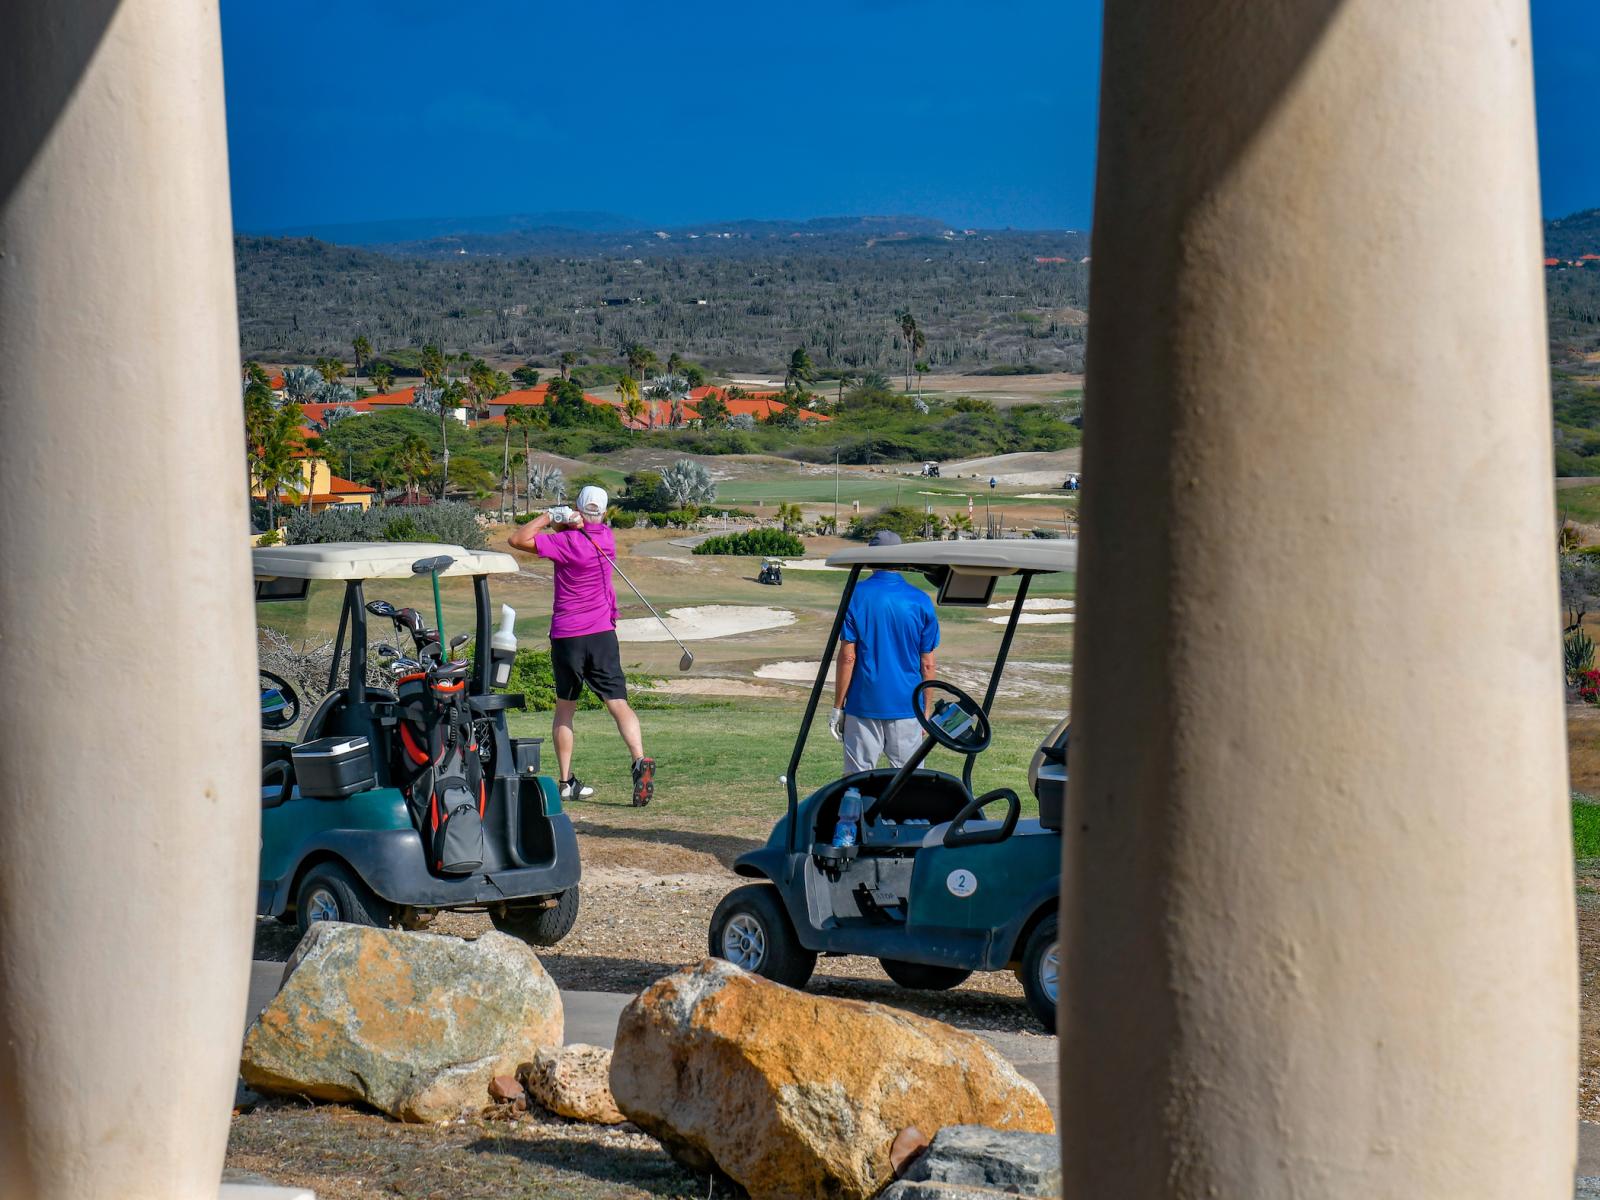 Tierra del Sol Aruba 18 hole golf course